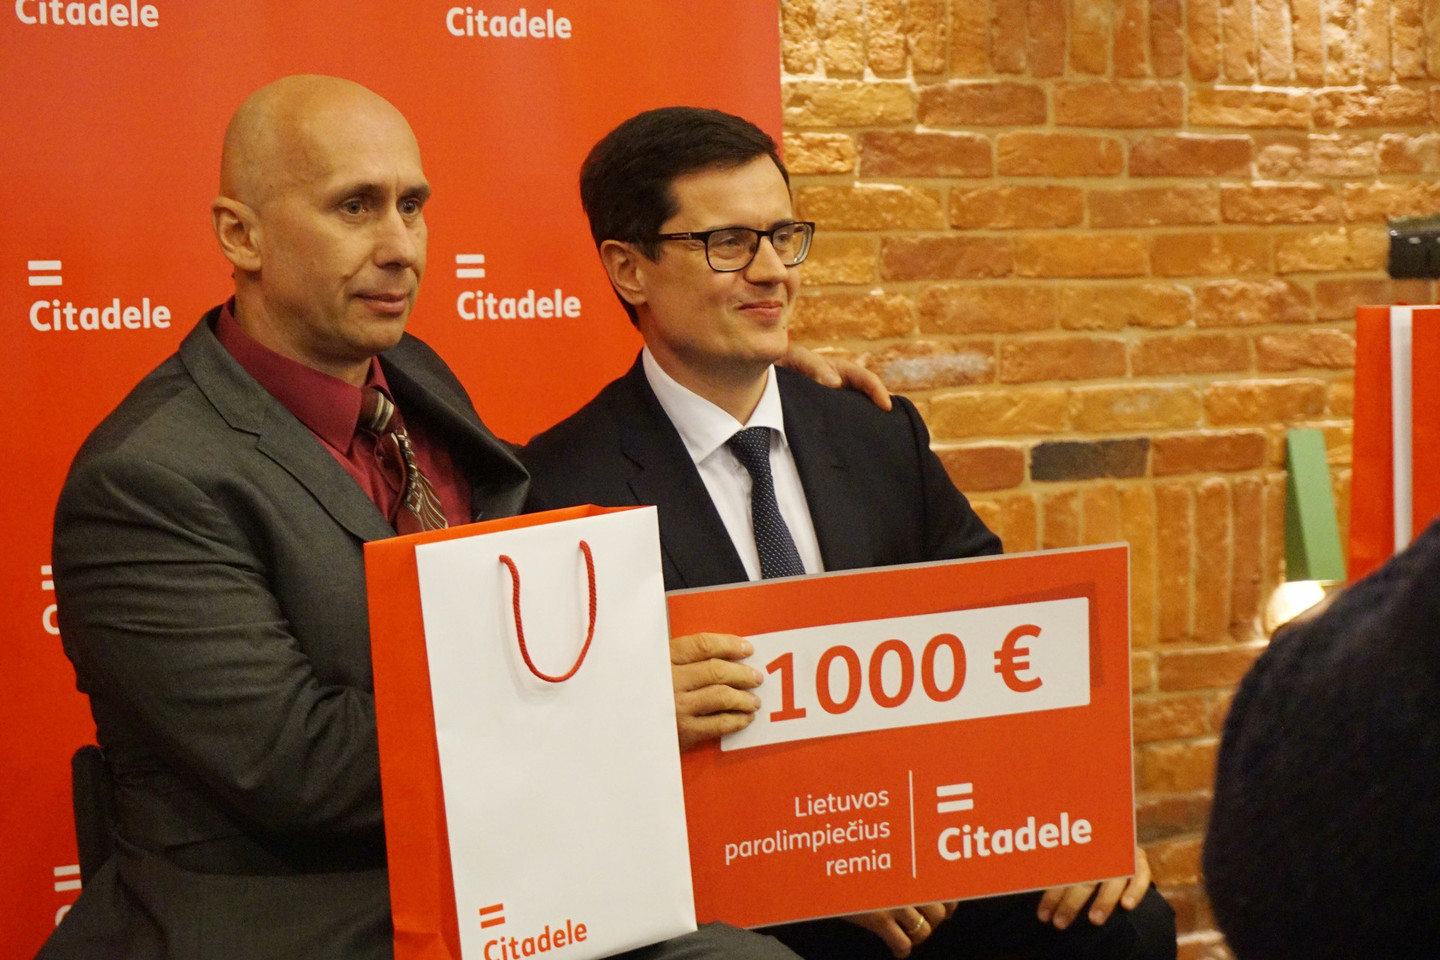 Kęstučiui Skučui bankas „Citadelė“ padovanojo 1000 eurų.<br>Aurelijos Babinskienės nuotr.